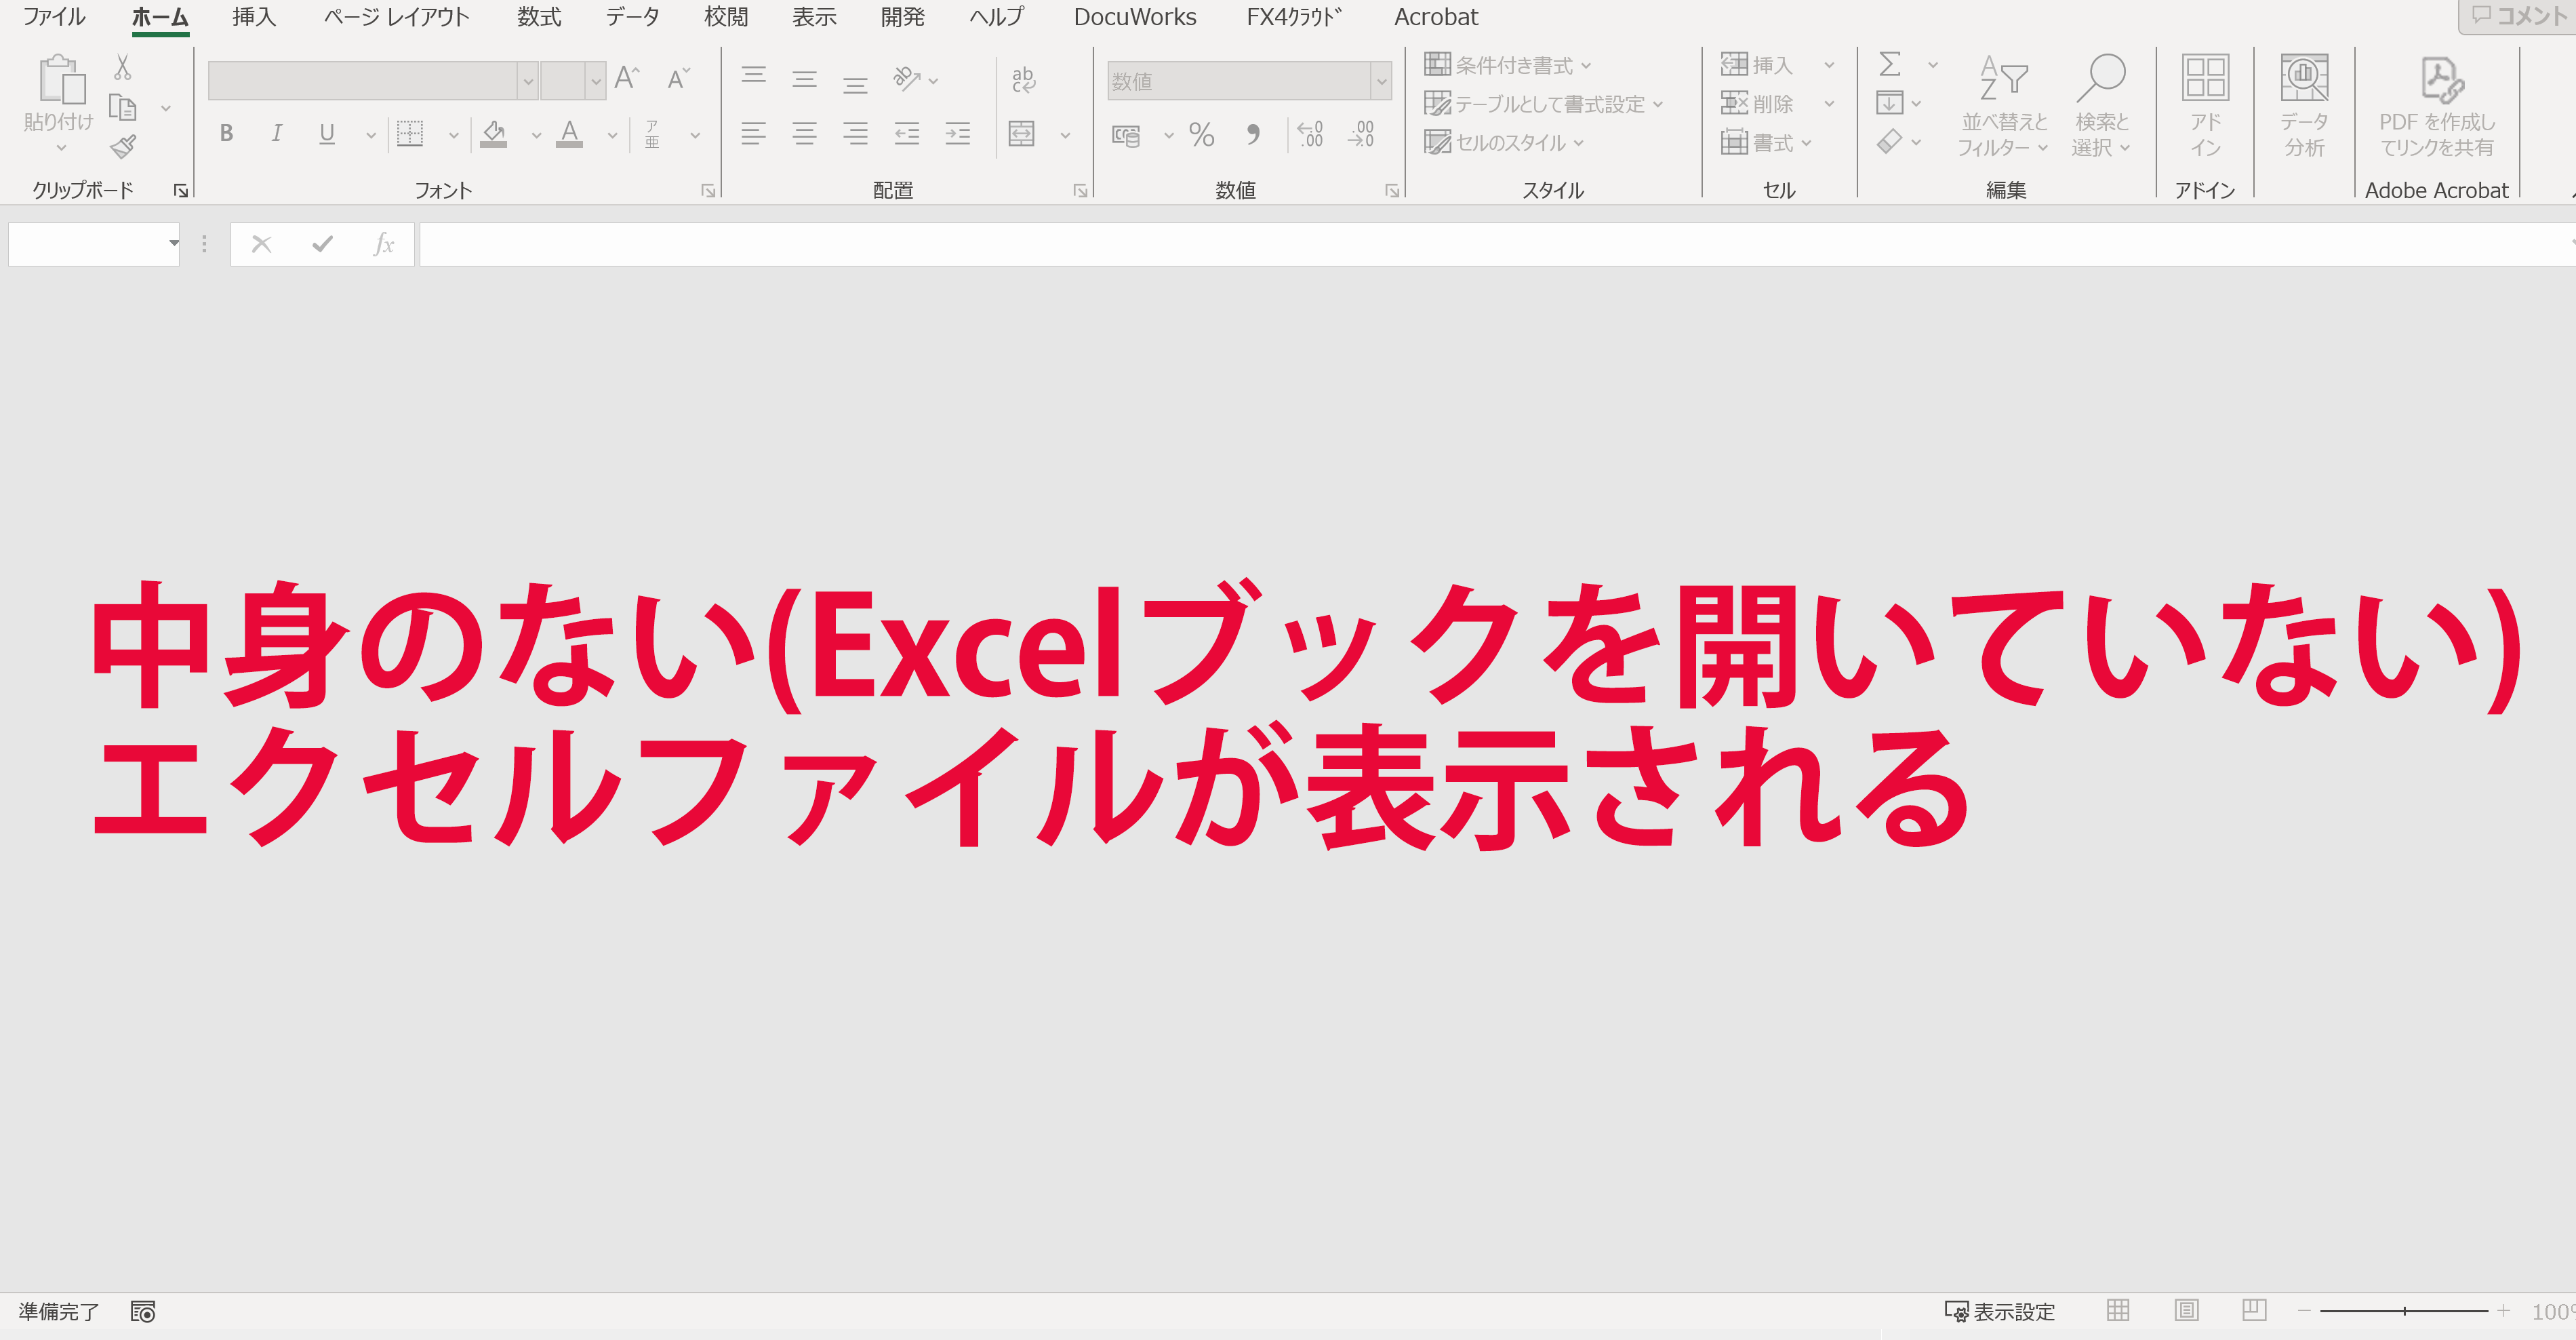 中身のない(Excelブックを開いていない)エクセルファイルの表示